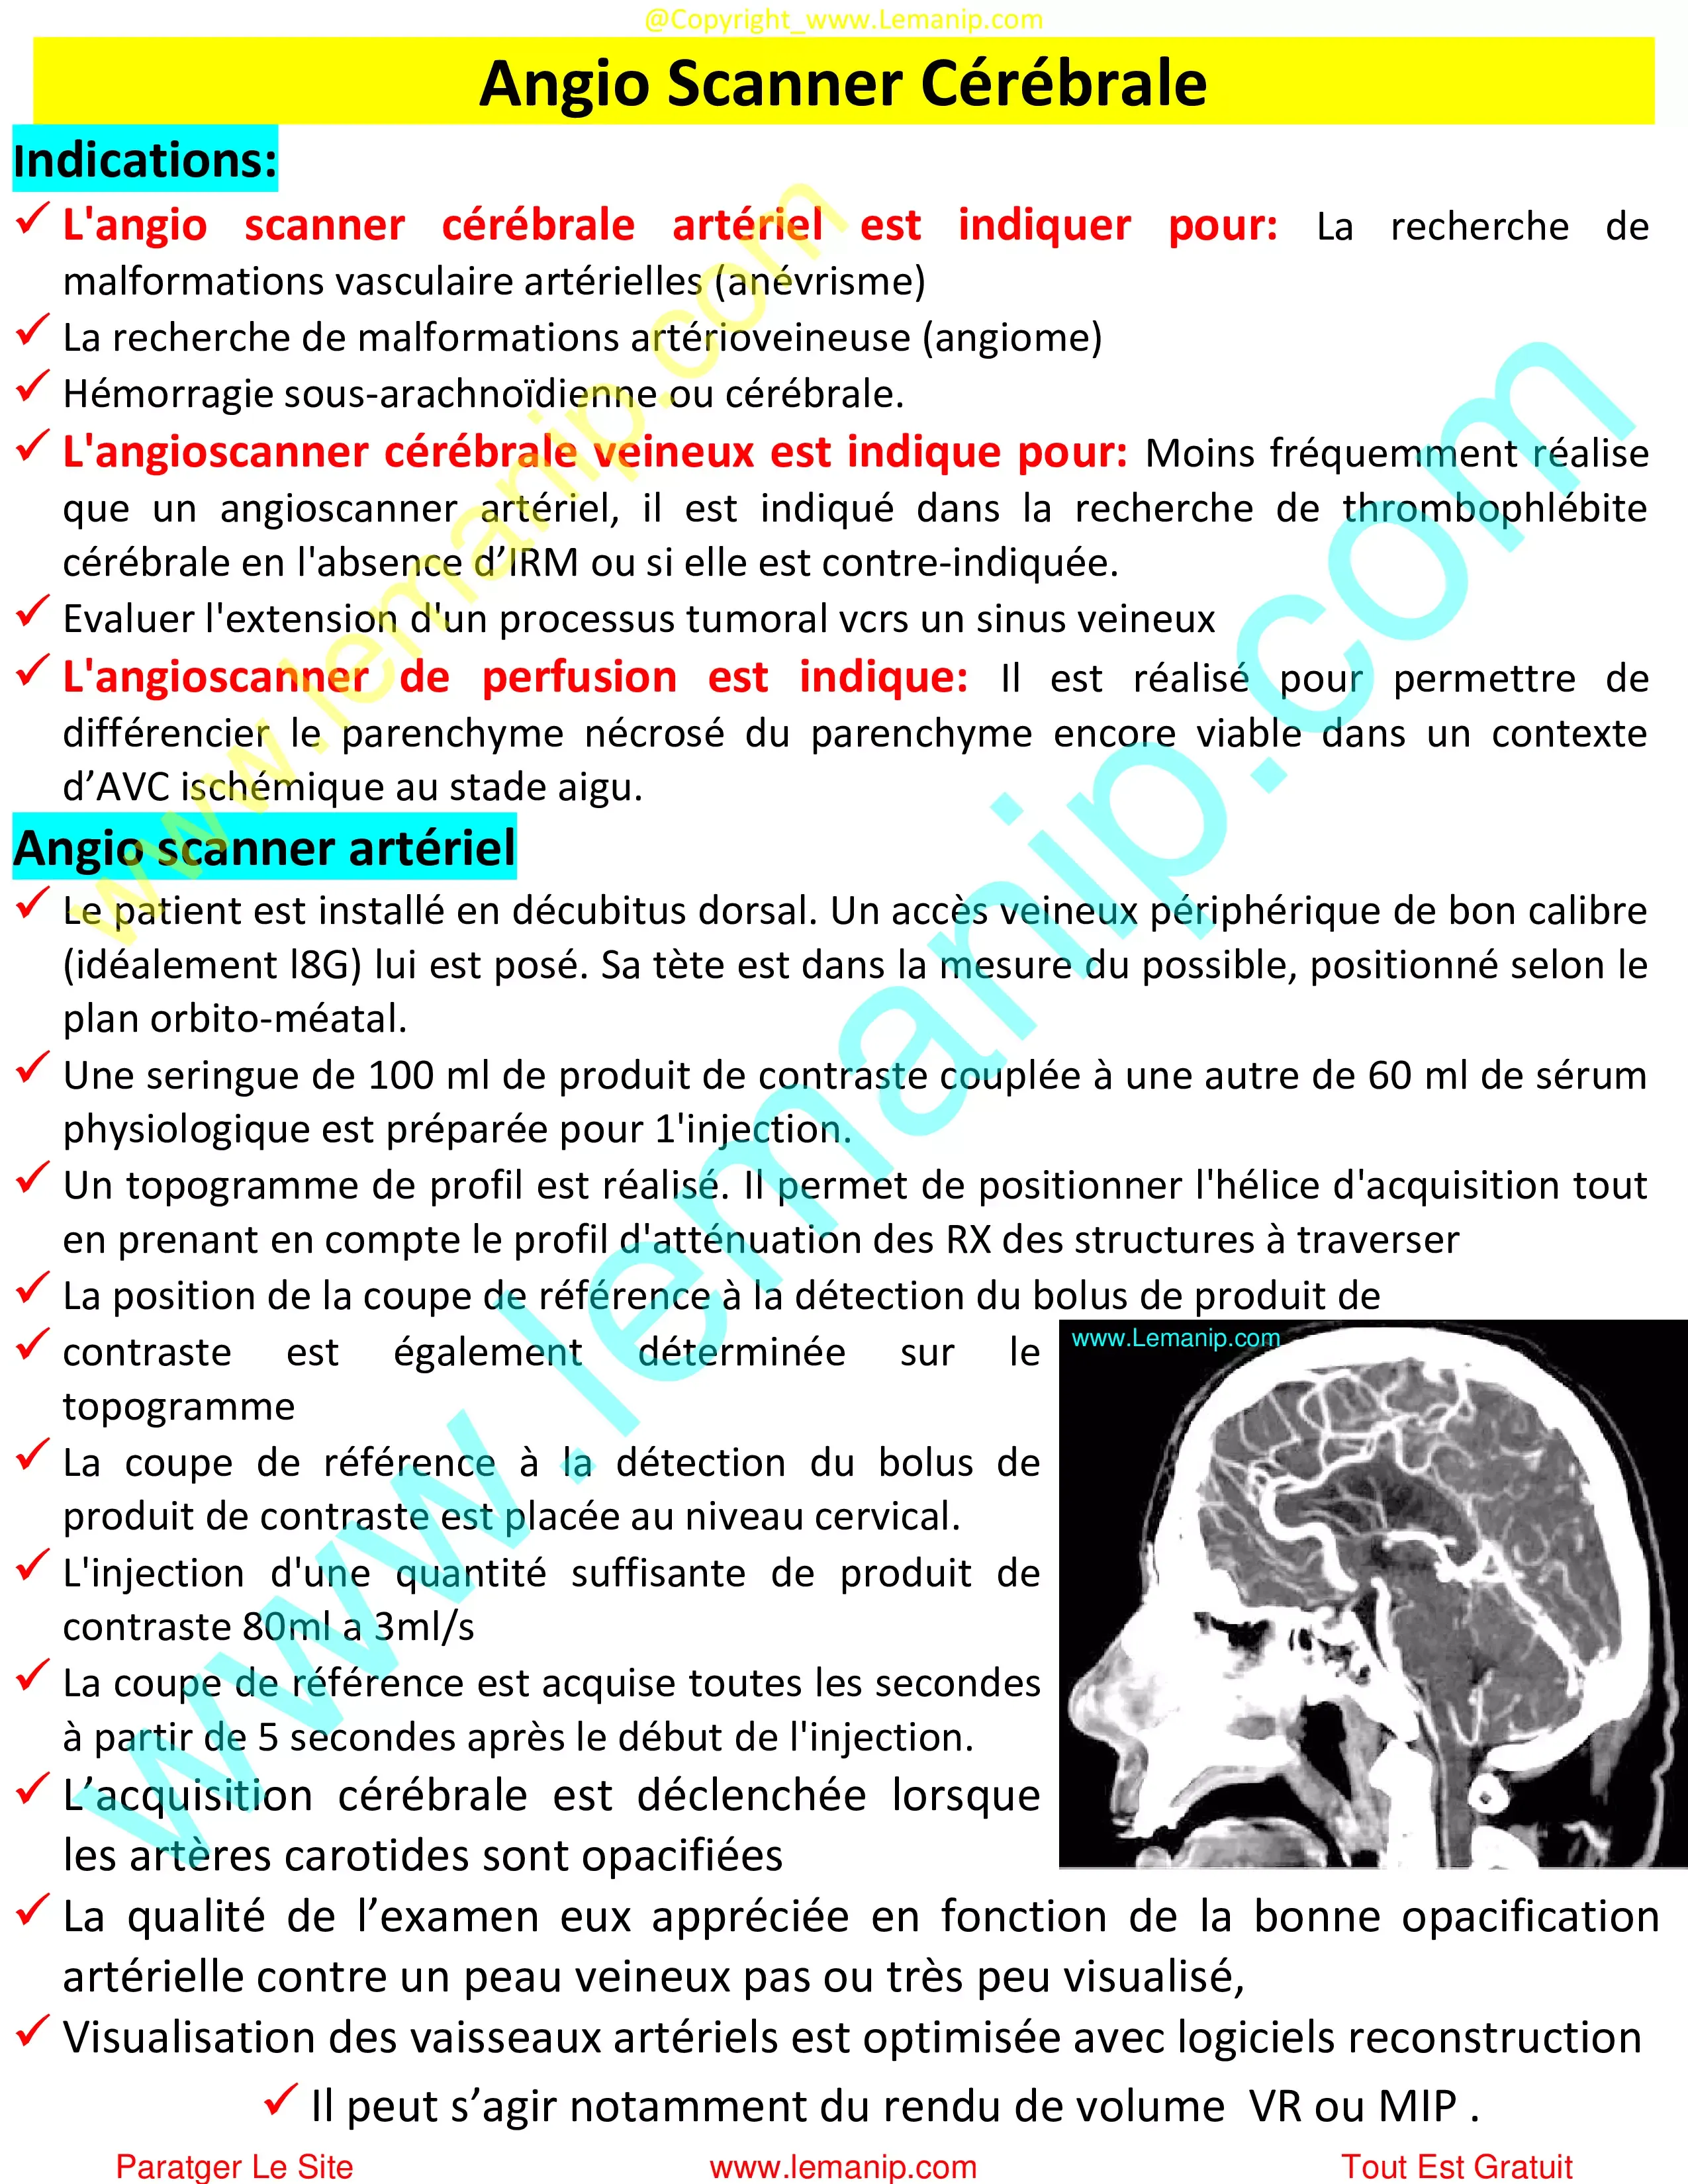 Angio Scanner Cérébrale